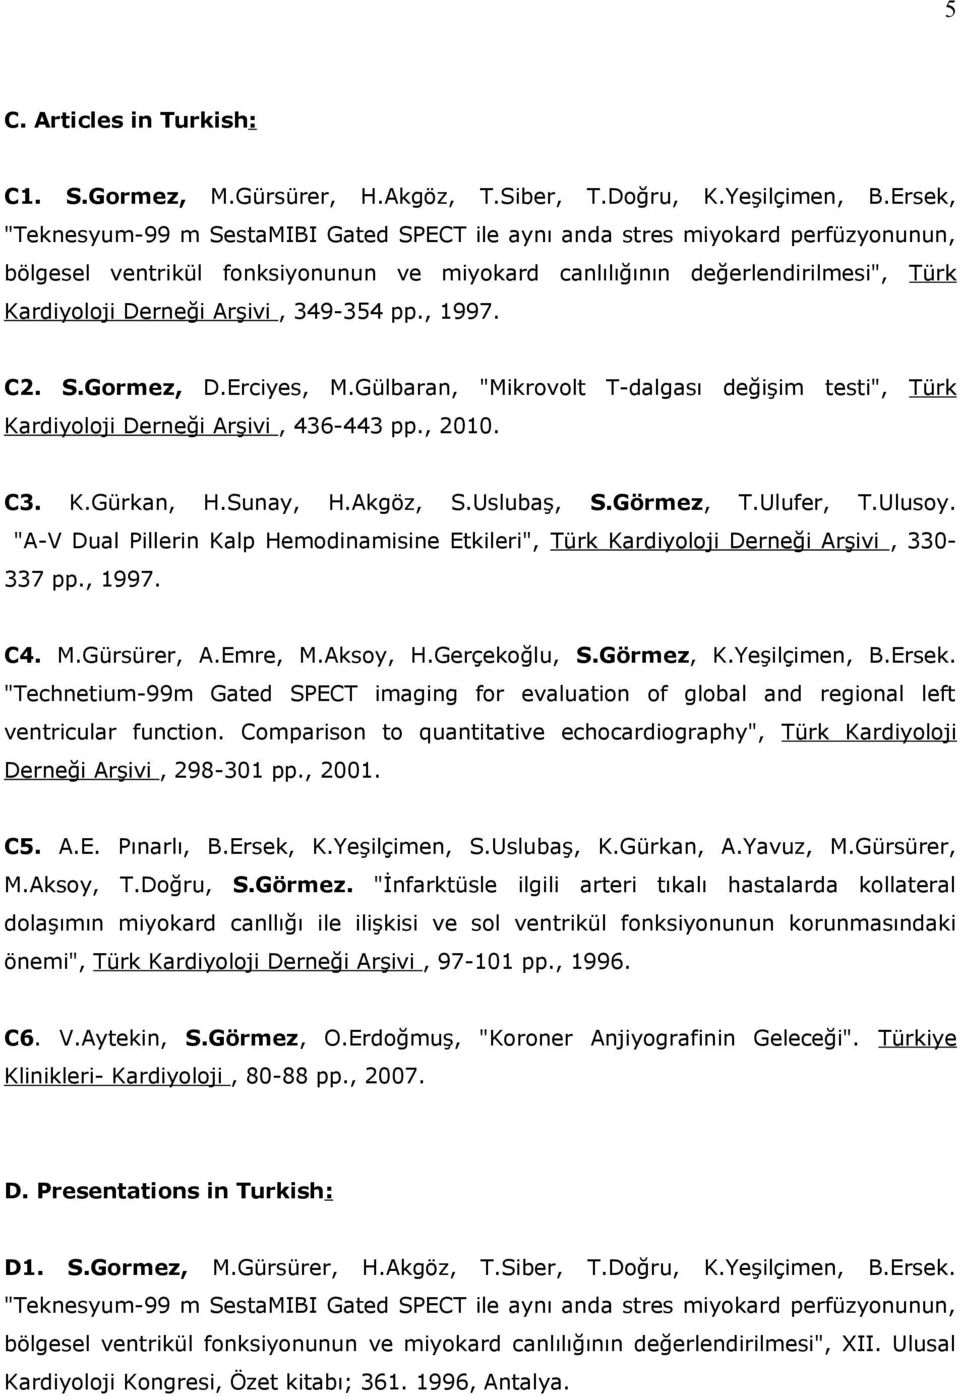 349-354 pp., 1997. C2. S.Gormez, D.Erciyes, M.Gülbaran, "Mikrovolt T-dalgası değişim testi", Türk Kardiyoloji Derneği Arşivi, 436-443 pp., 2010. C3. K.Gürkan, H.Sunay, H.Akgöz, S.Uslubaş, S.Görmez, T.